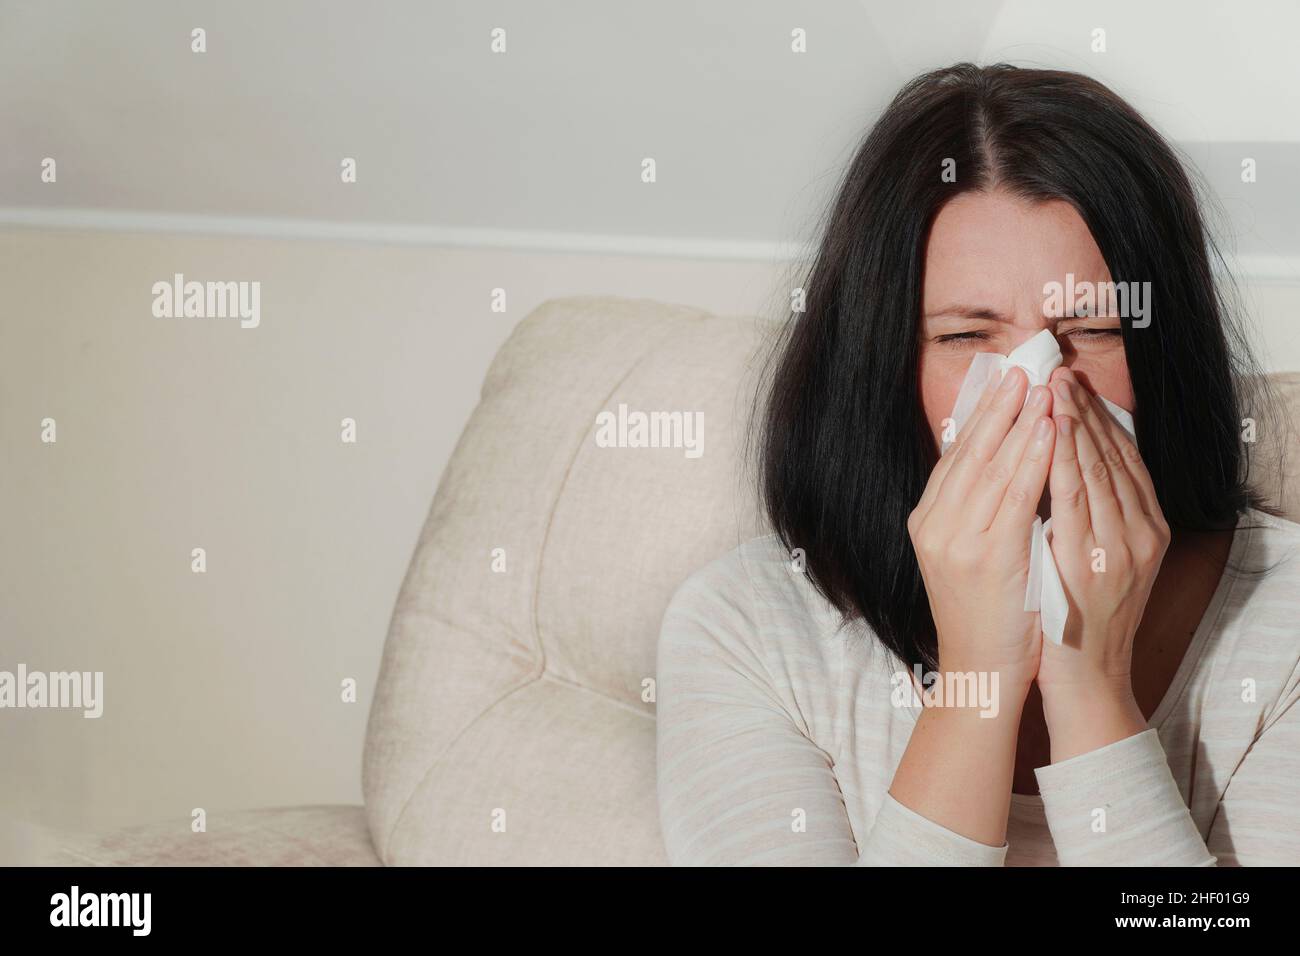 Femme adulte d'âge moyen souffrant de rhinite allergique à la maison.Symptômes de rhume ou d'allergie.La femme éternue dans un mouchoir blanc. Banque D'Images